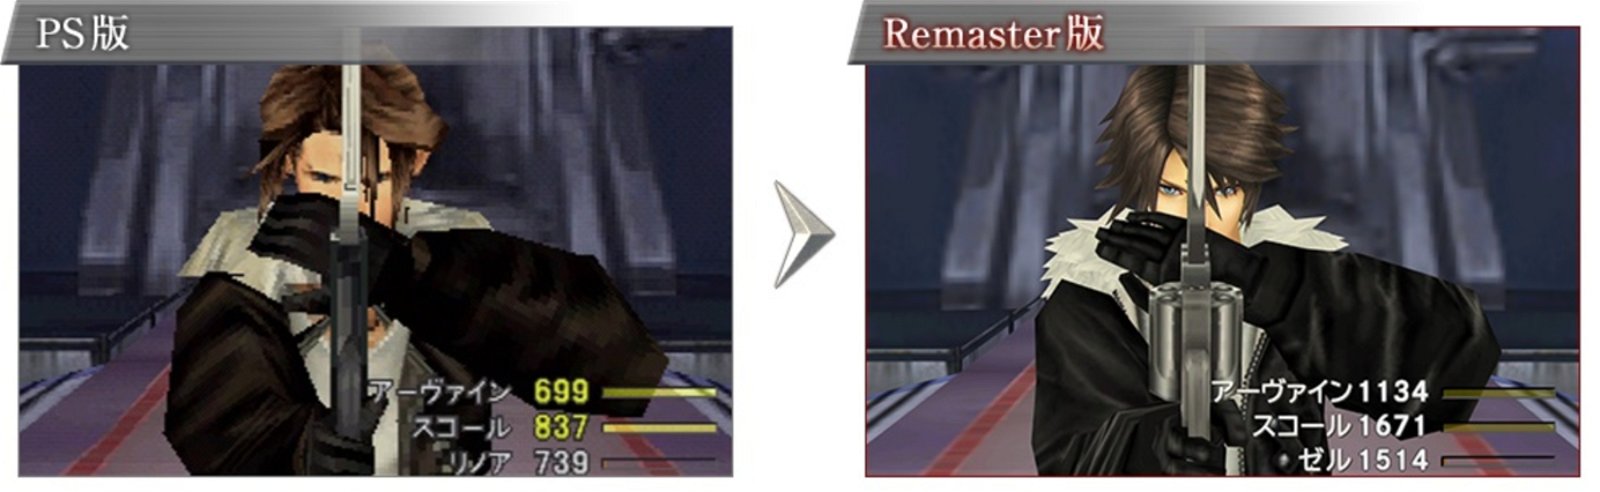 Comparativa FF8 Remaster 02